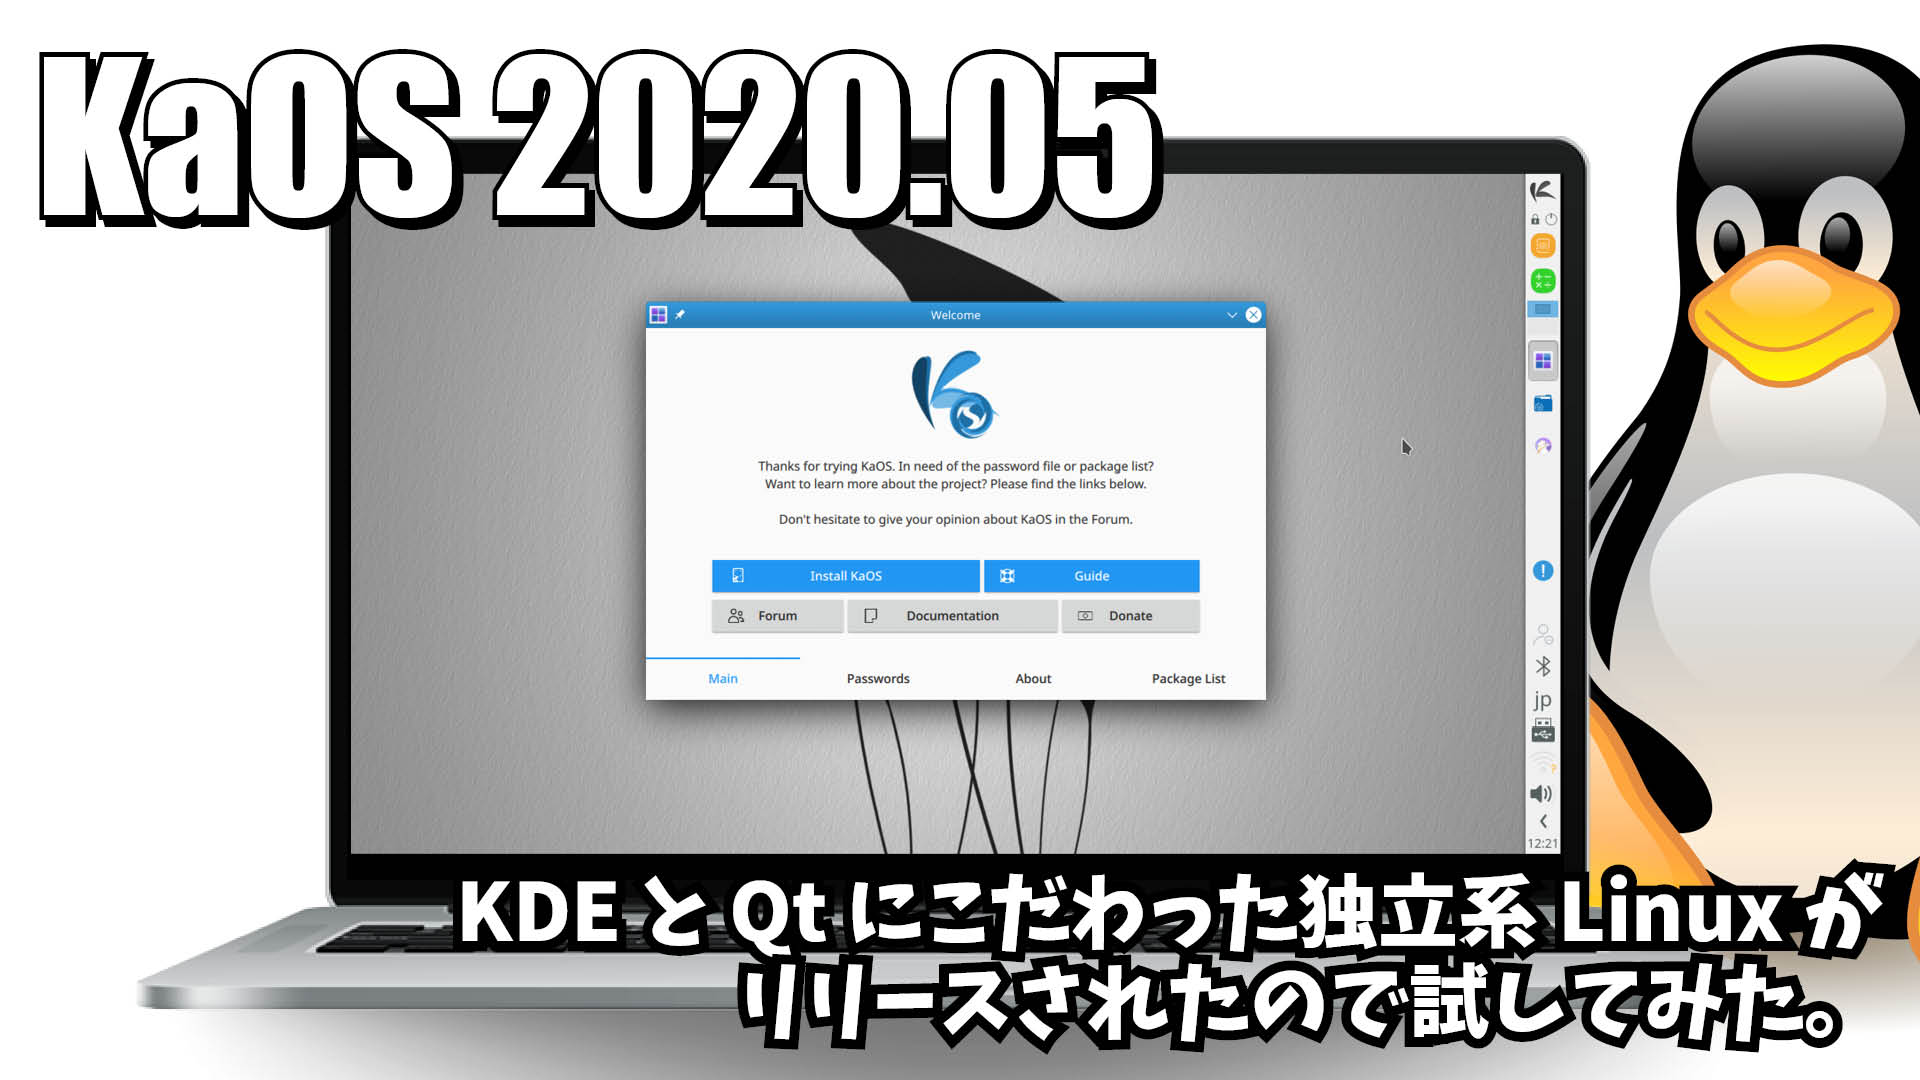 KaOS 2020.05: KDE と Qt にこだわった独立系Linuxがリリースされたので試してみた。